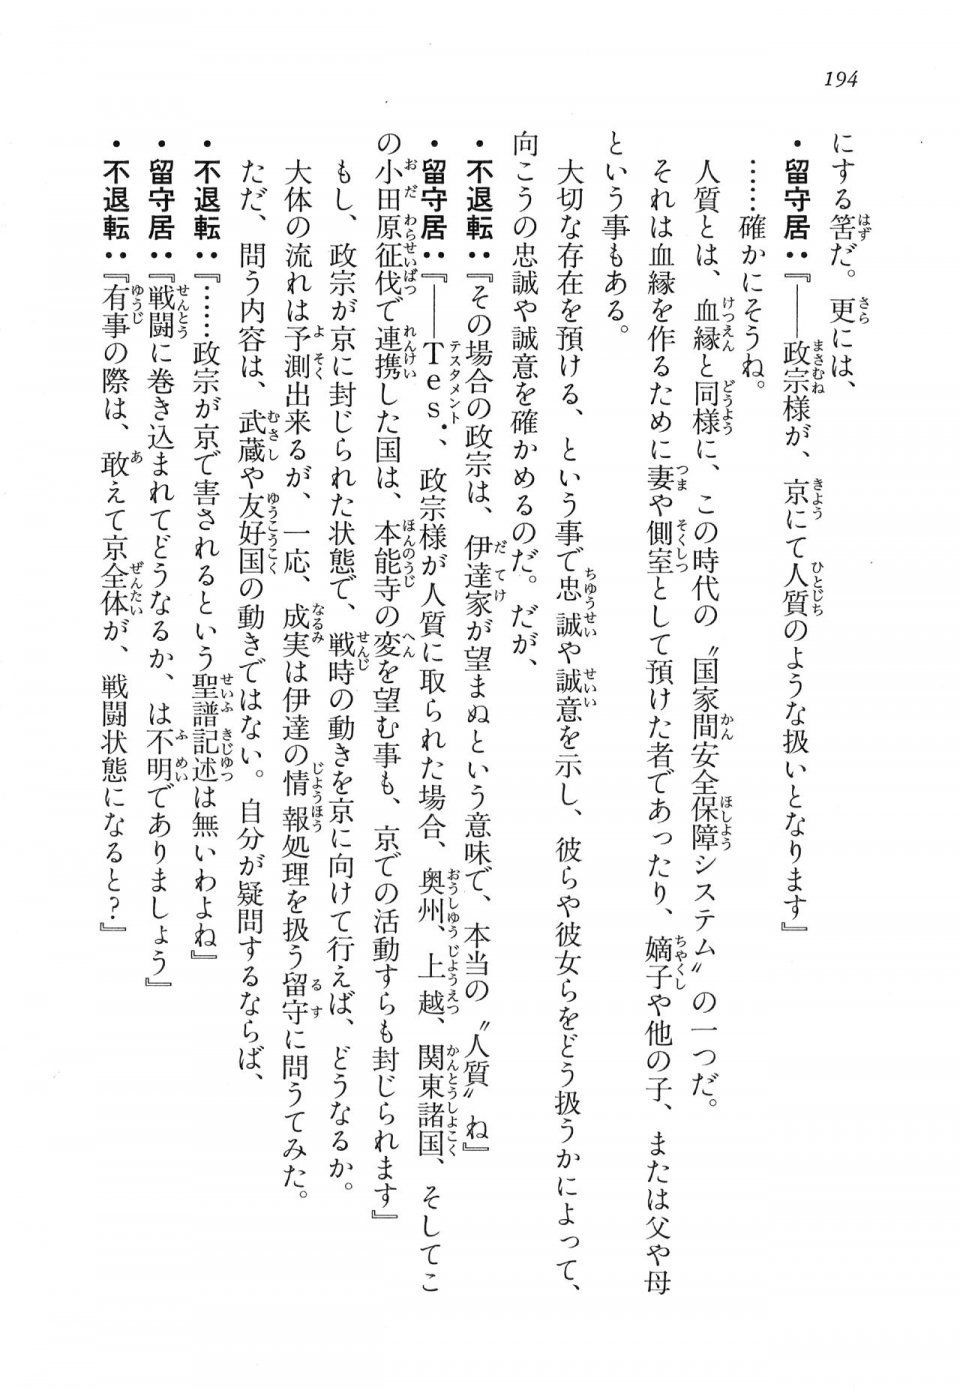 Kyoukai Senjou no Horizon LN Vol 16(7A) - Photo #194